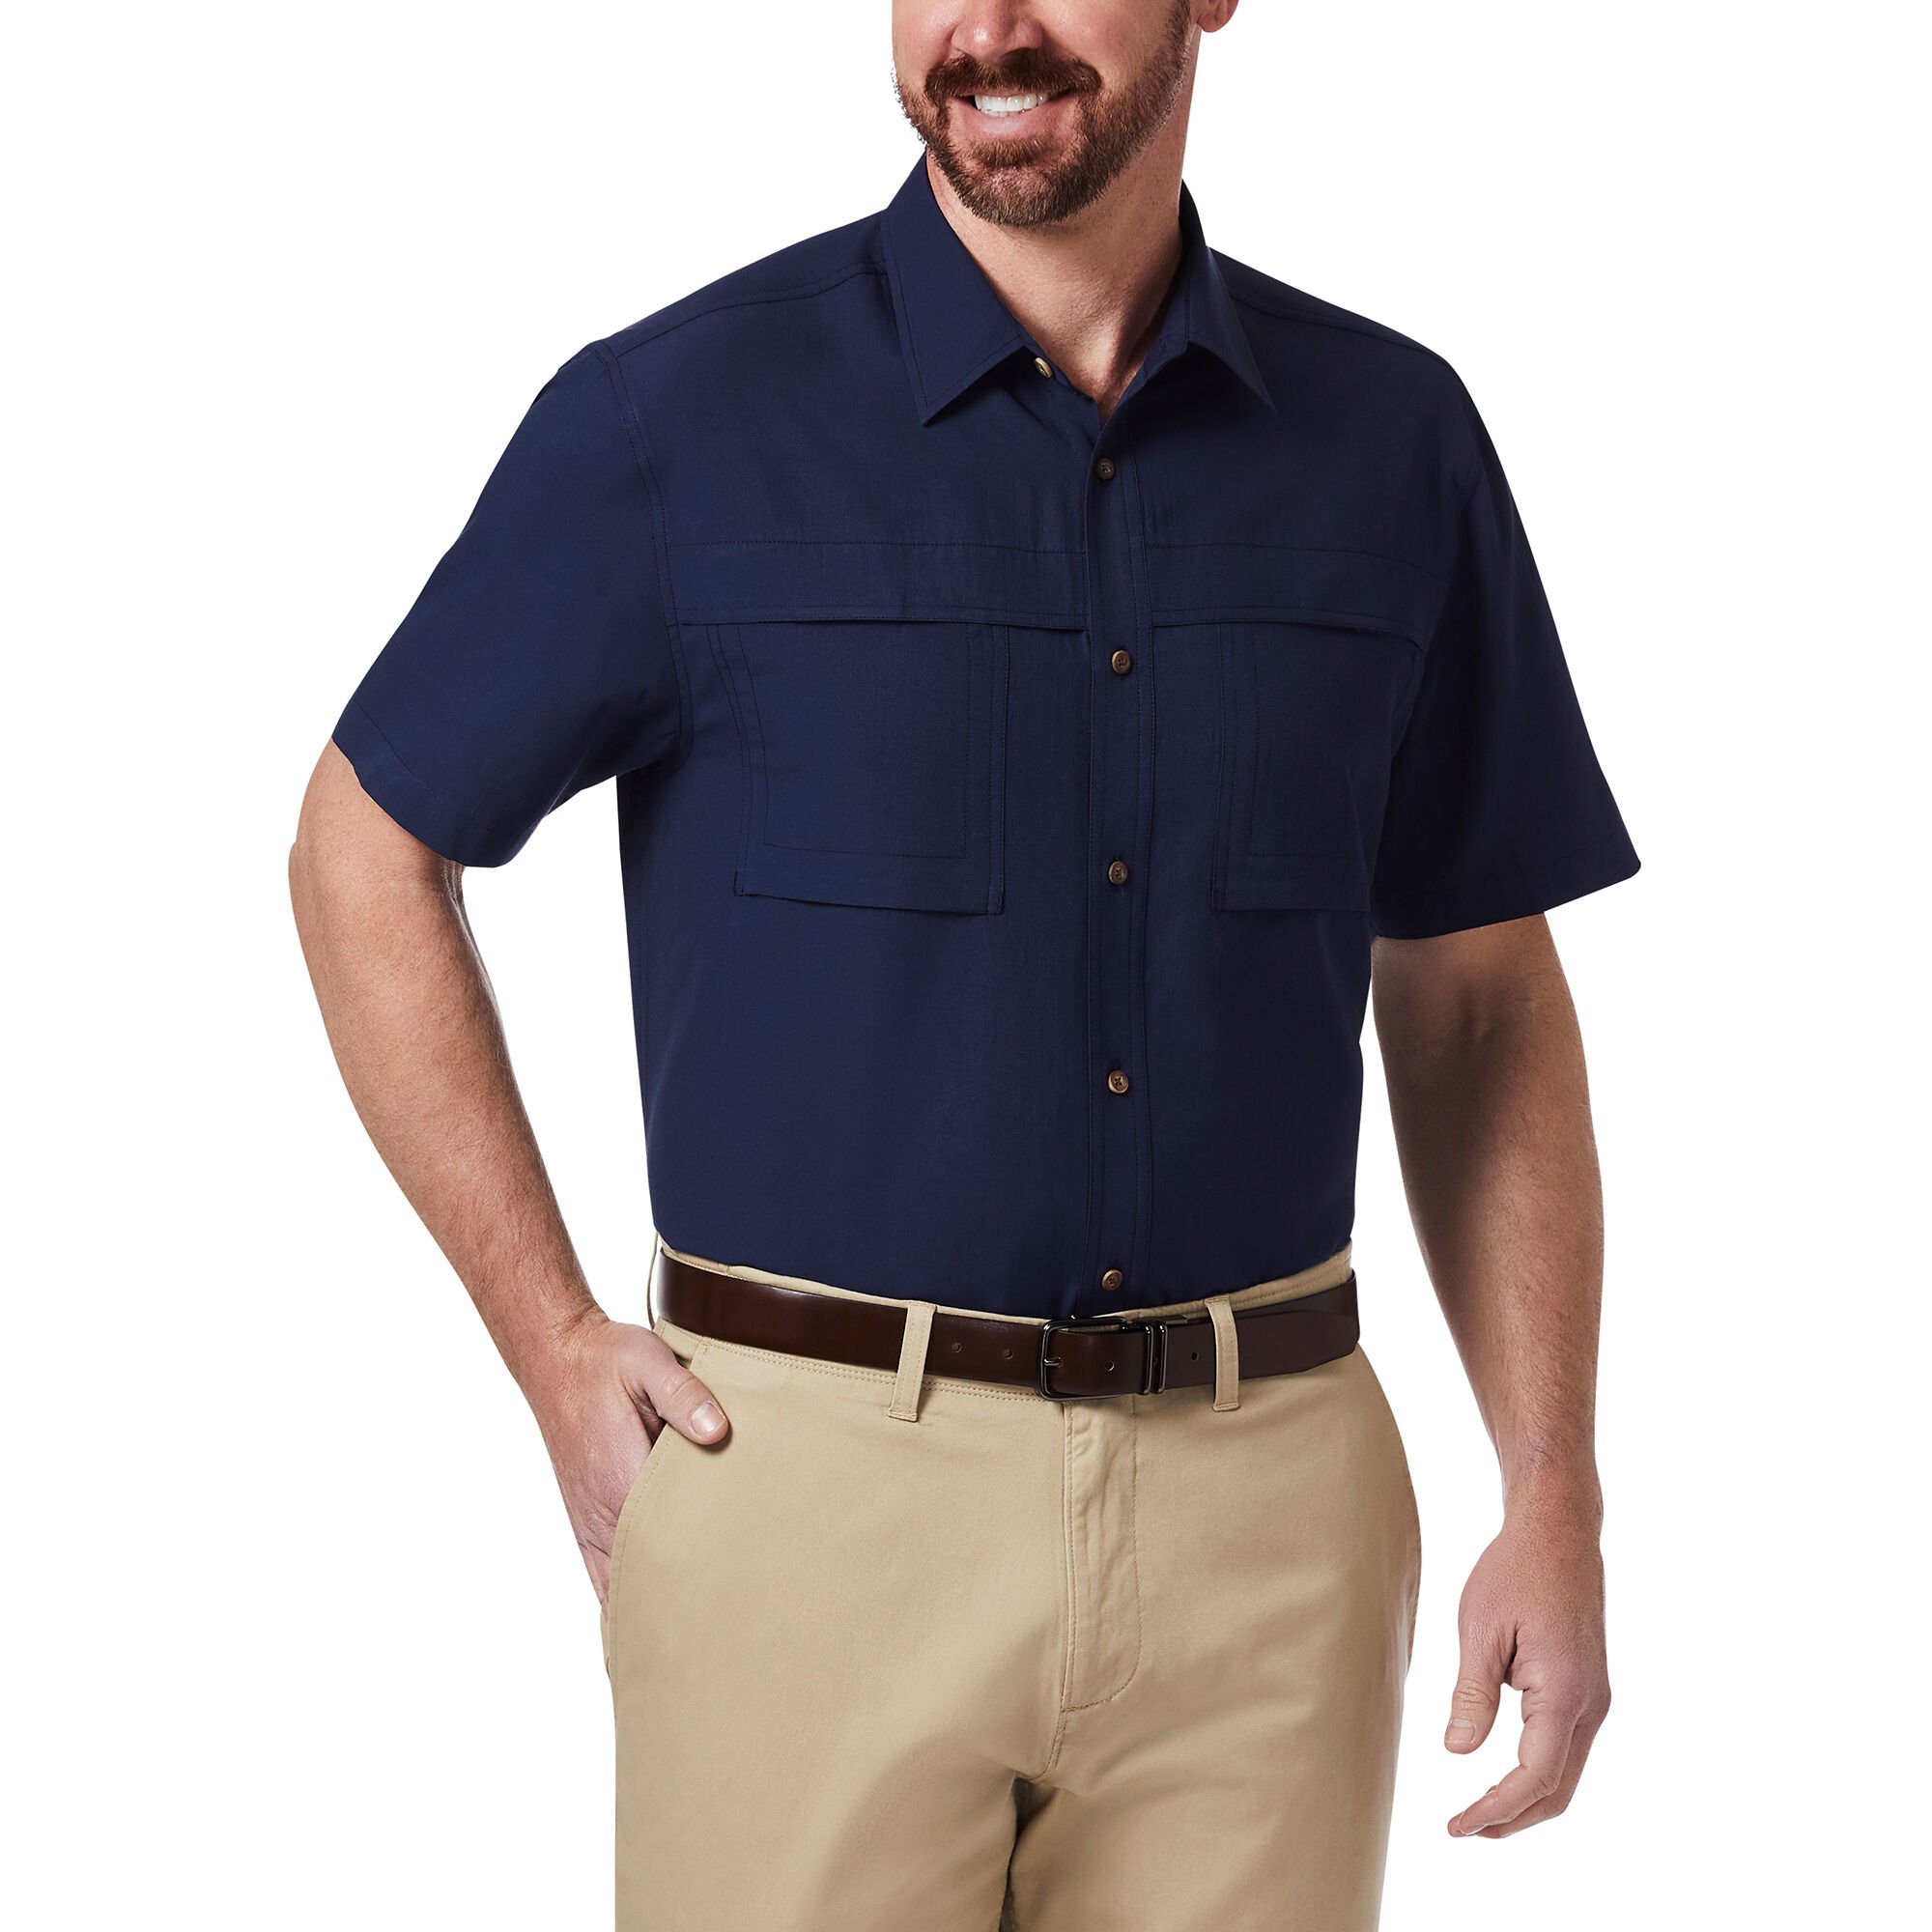 Haggar Double Pocket Guide Shirt Navy (HS8A2052 Clothing Shirts & Tops) photo